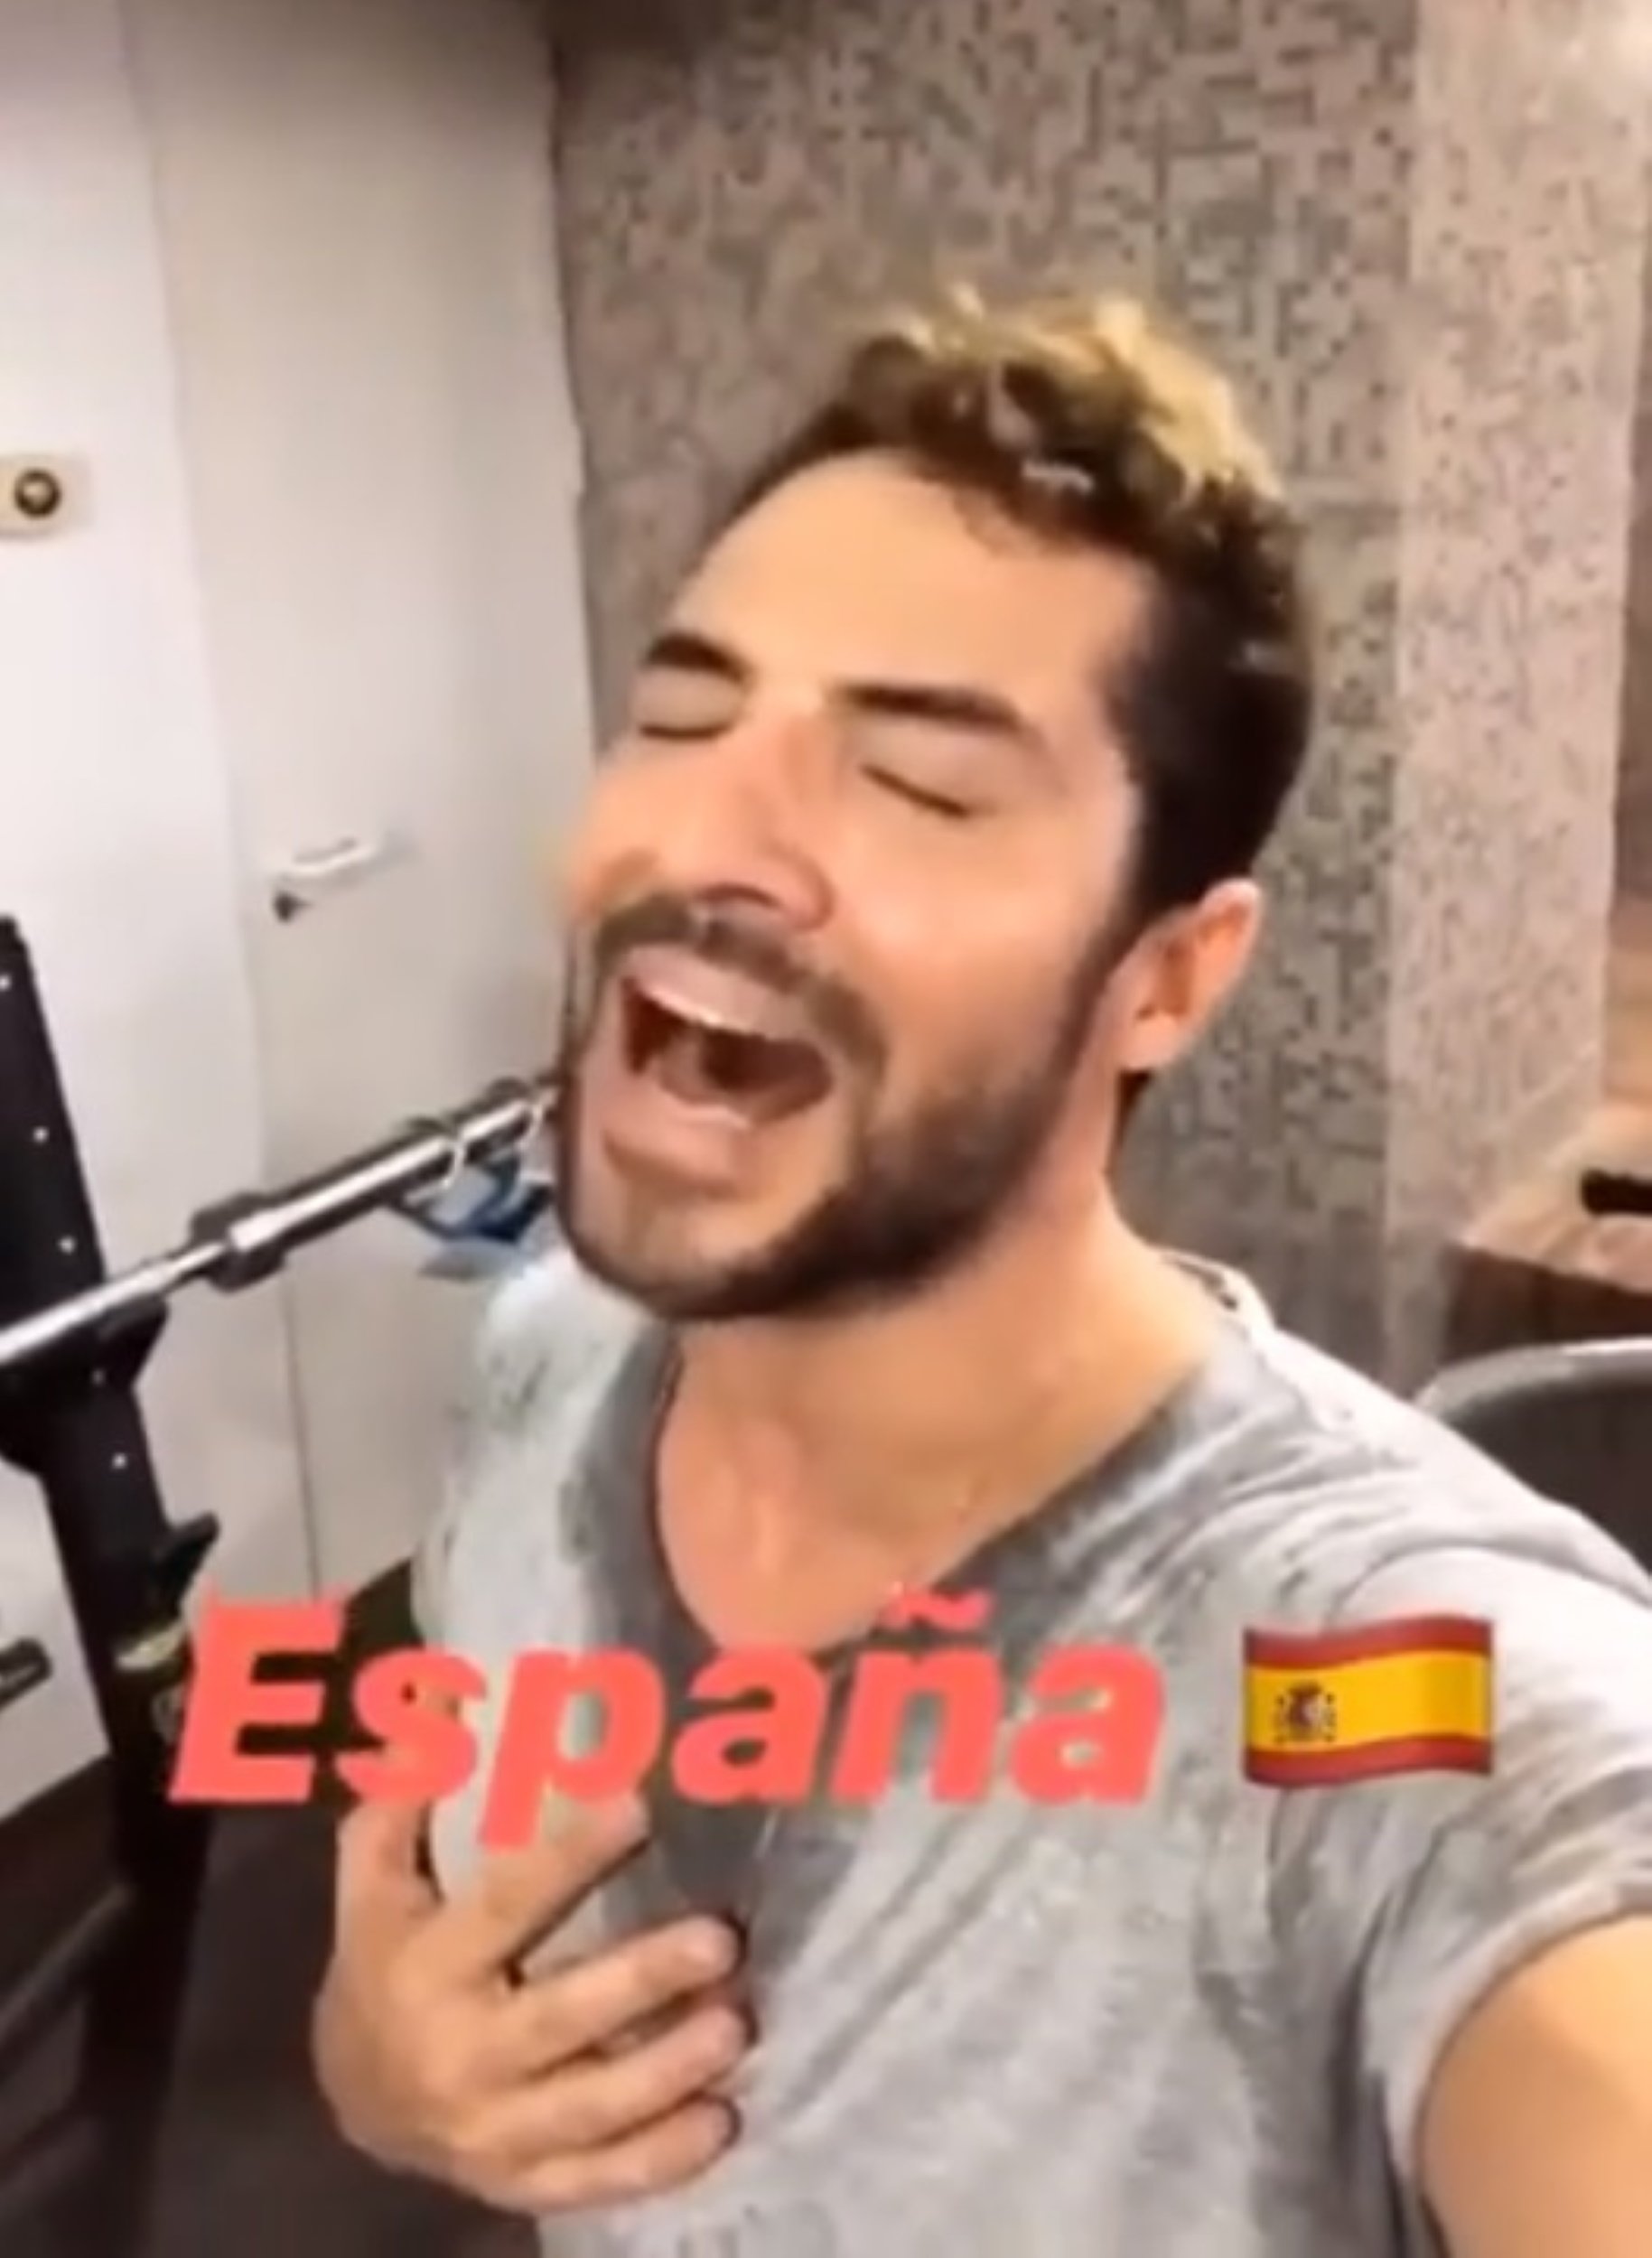 David Bisbal interpreta el himno de España, sudado y a gritos, y produce escalofríos